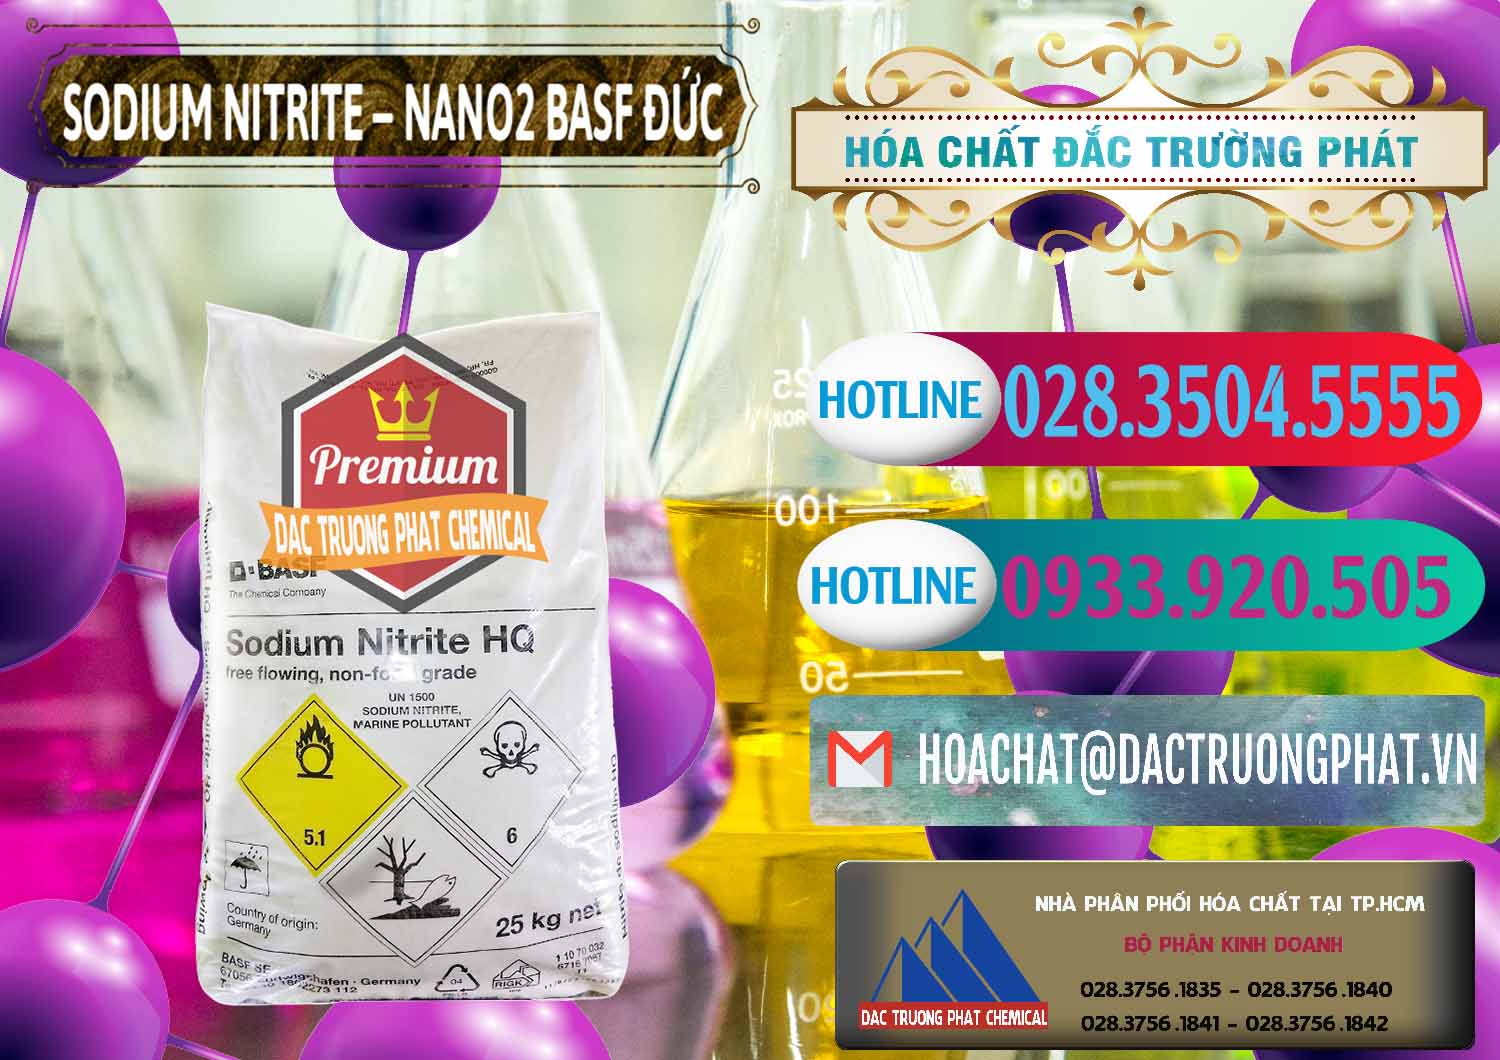 Công ty chuyên bán ( cung cấp ) Sodium Nitrite - NANO2 Đức BASF Germany - 0148 - Đơn vị kinh doanh _ cung cấp hóa chất tại TP.HCM - truongphat.vn